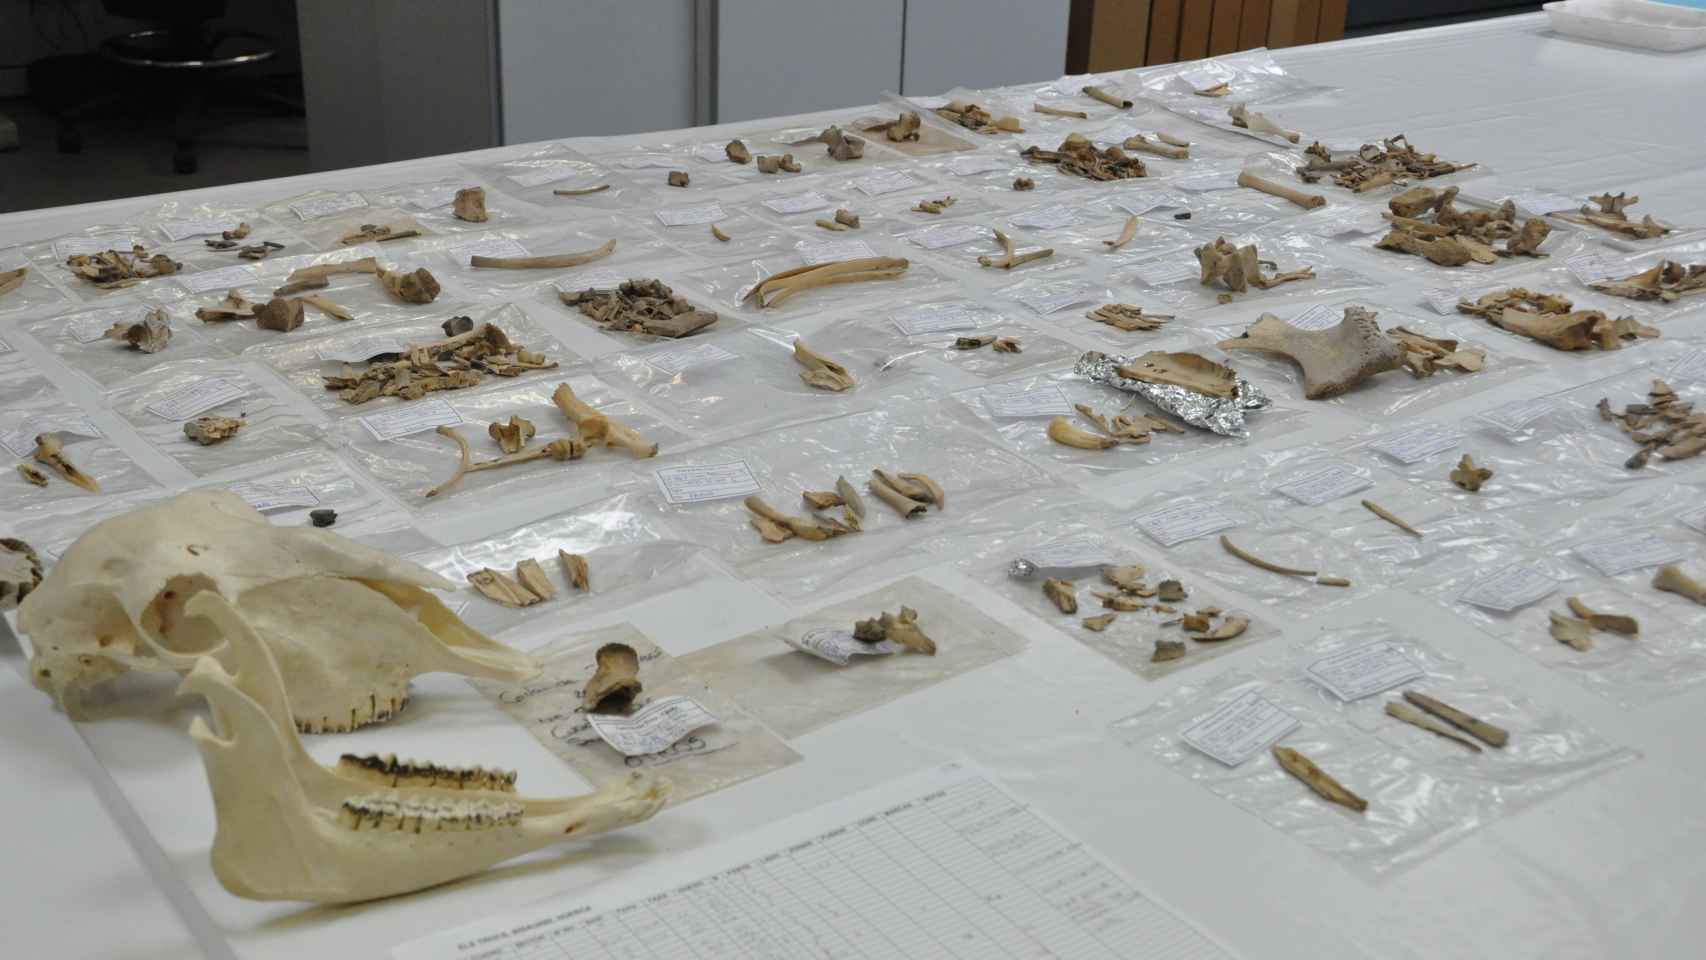 Laboratorio de Arqueobiología del Instituto de Historia el CSIC (Madrid) donde se analizan las muestras de ovinos del presente estudio.